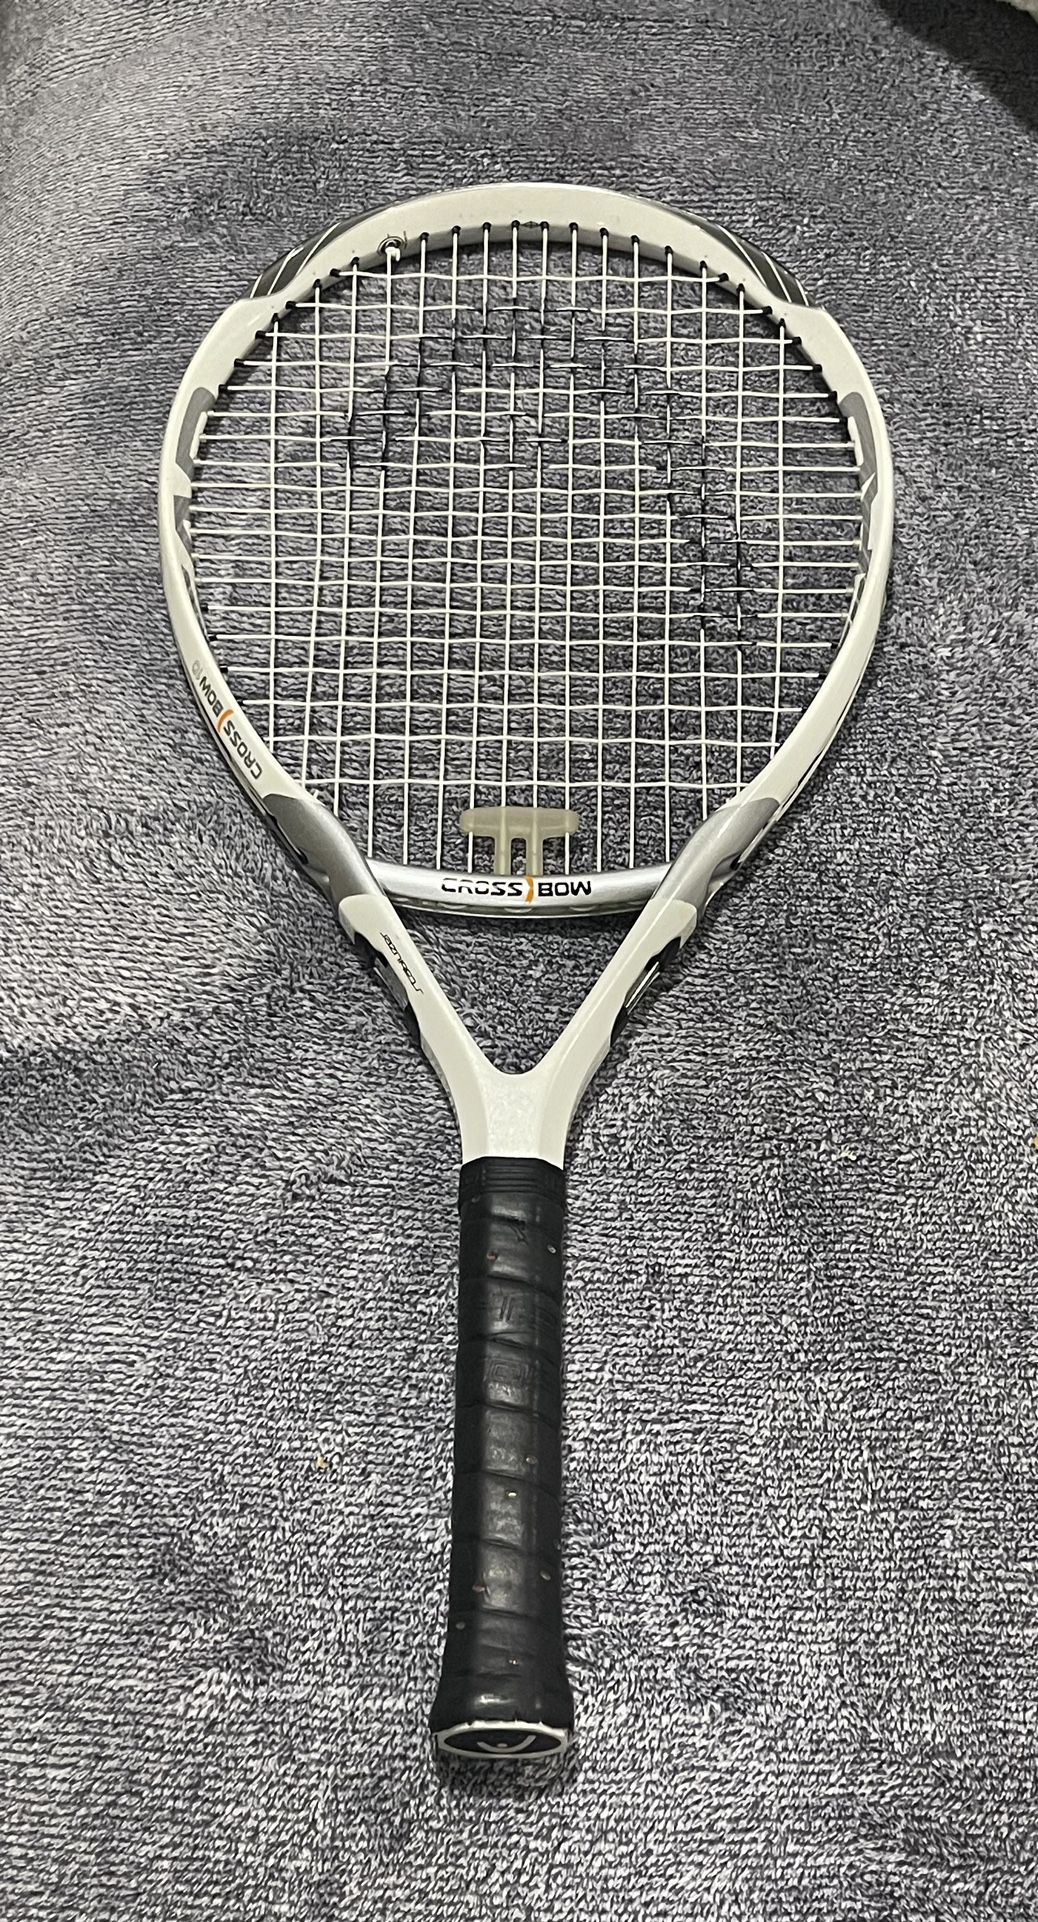 Head CROSS BOW 10 tennis racket, Head size 800 cm / 124 in